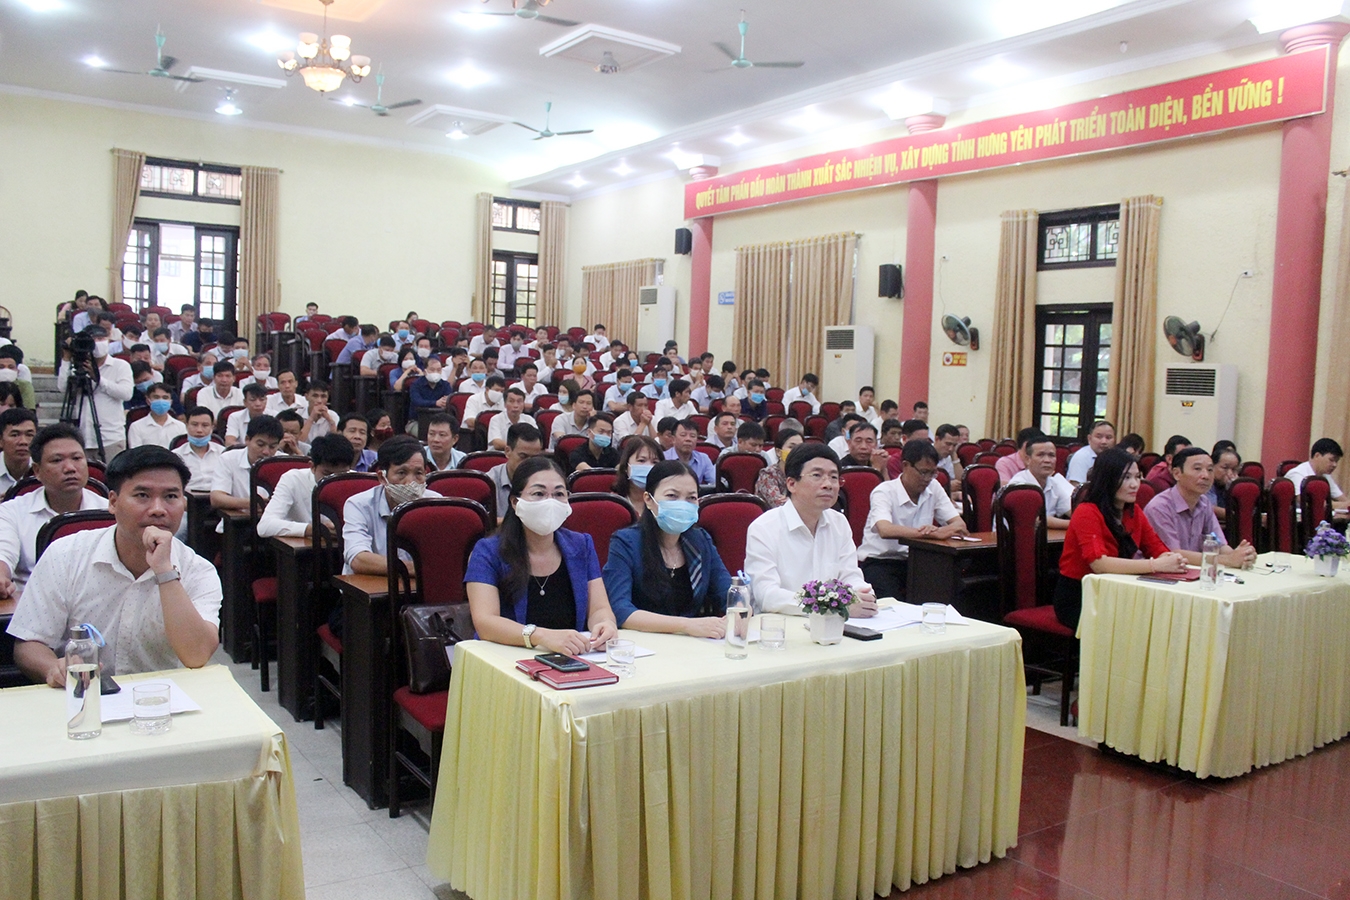 Khai giảng lớp bồi dưỡng cán bộ chủ chốt Hội Nông dân các cấp  tỉnh Hưng Yên năm 2020